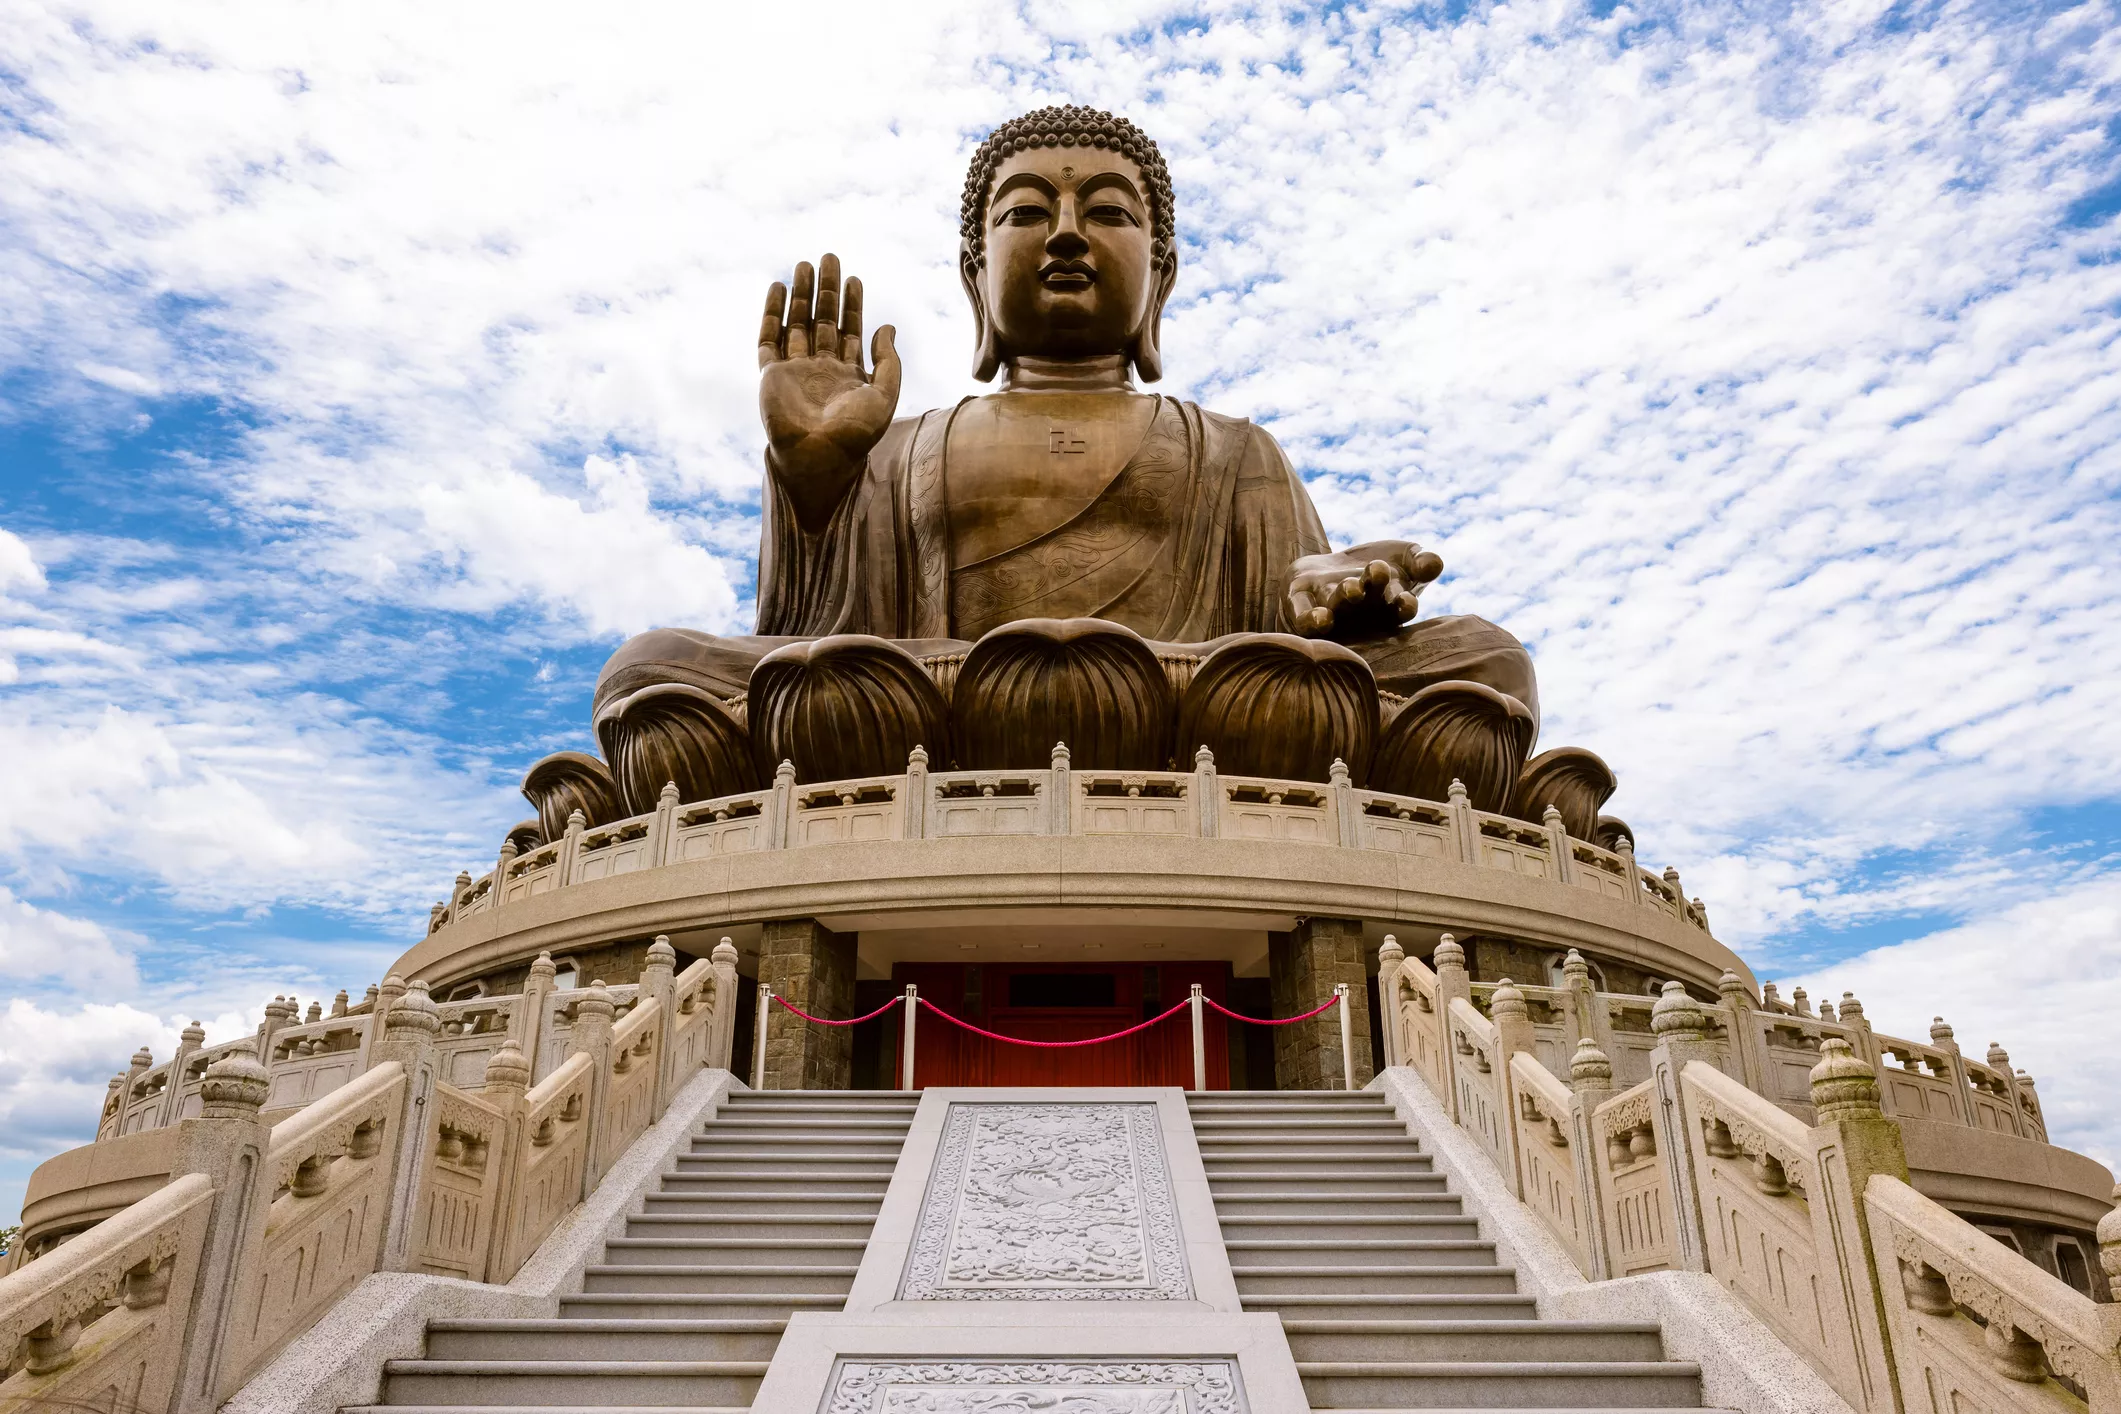 Evidències arqueològiques assenyalen que Buda va morir cap al 400 aC. La seva mort i la seva il·luminació són els dos episodis de la seva vida que apareixen amb més freqüència en els textos canònics budistes